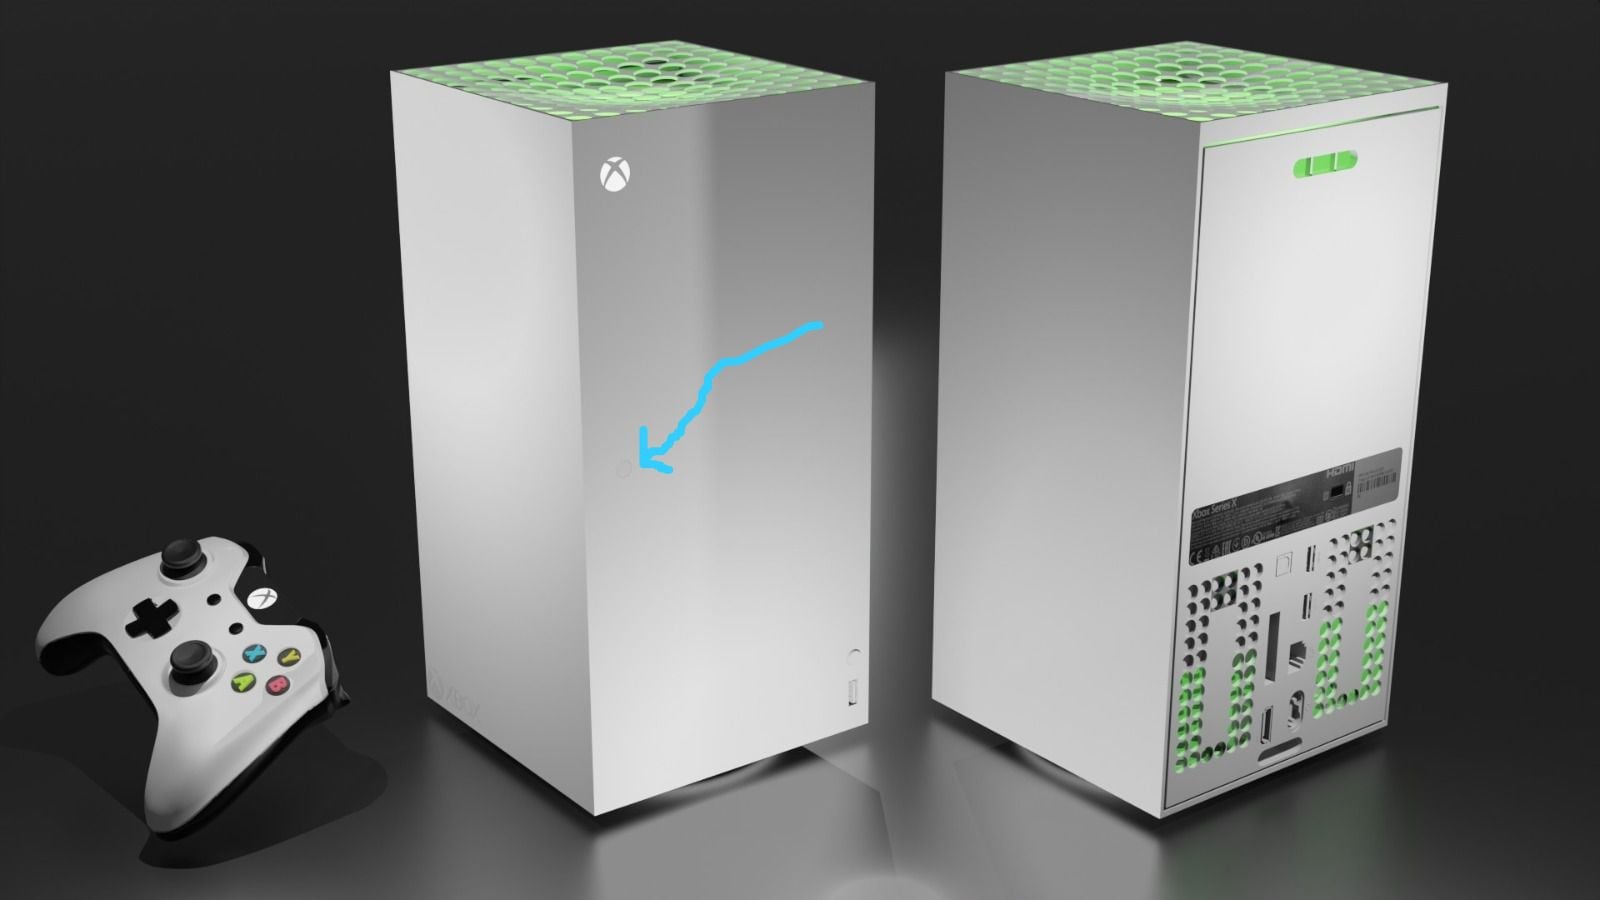 Así se vería la Xbox Series X si se lanzara su edición blanca y digital